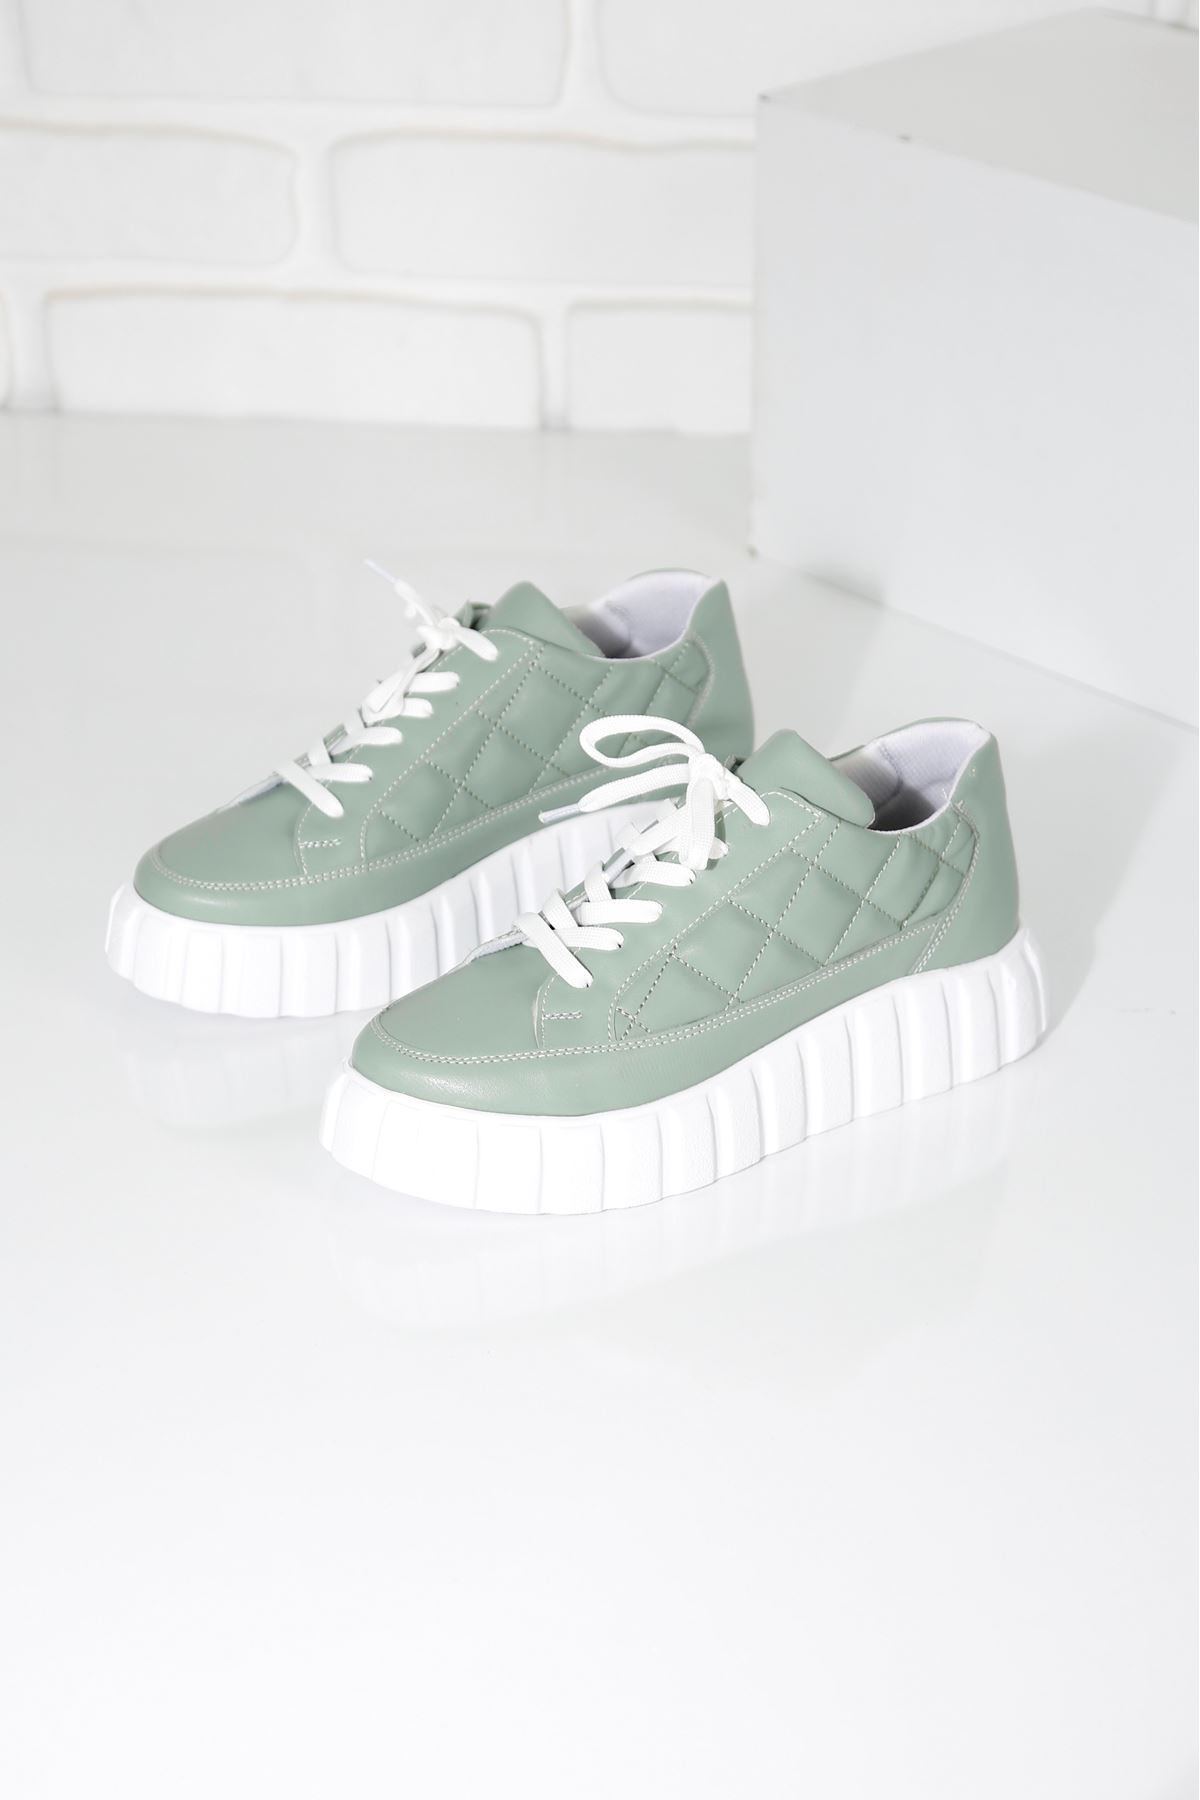 SOFT Mint Yeşili Kadın Spor Ayakkabı